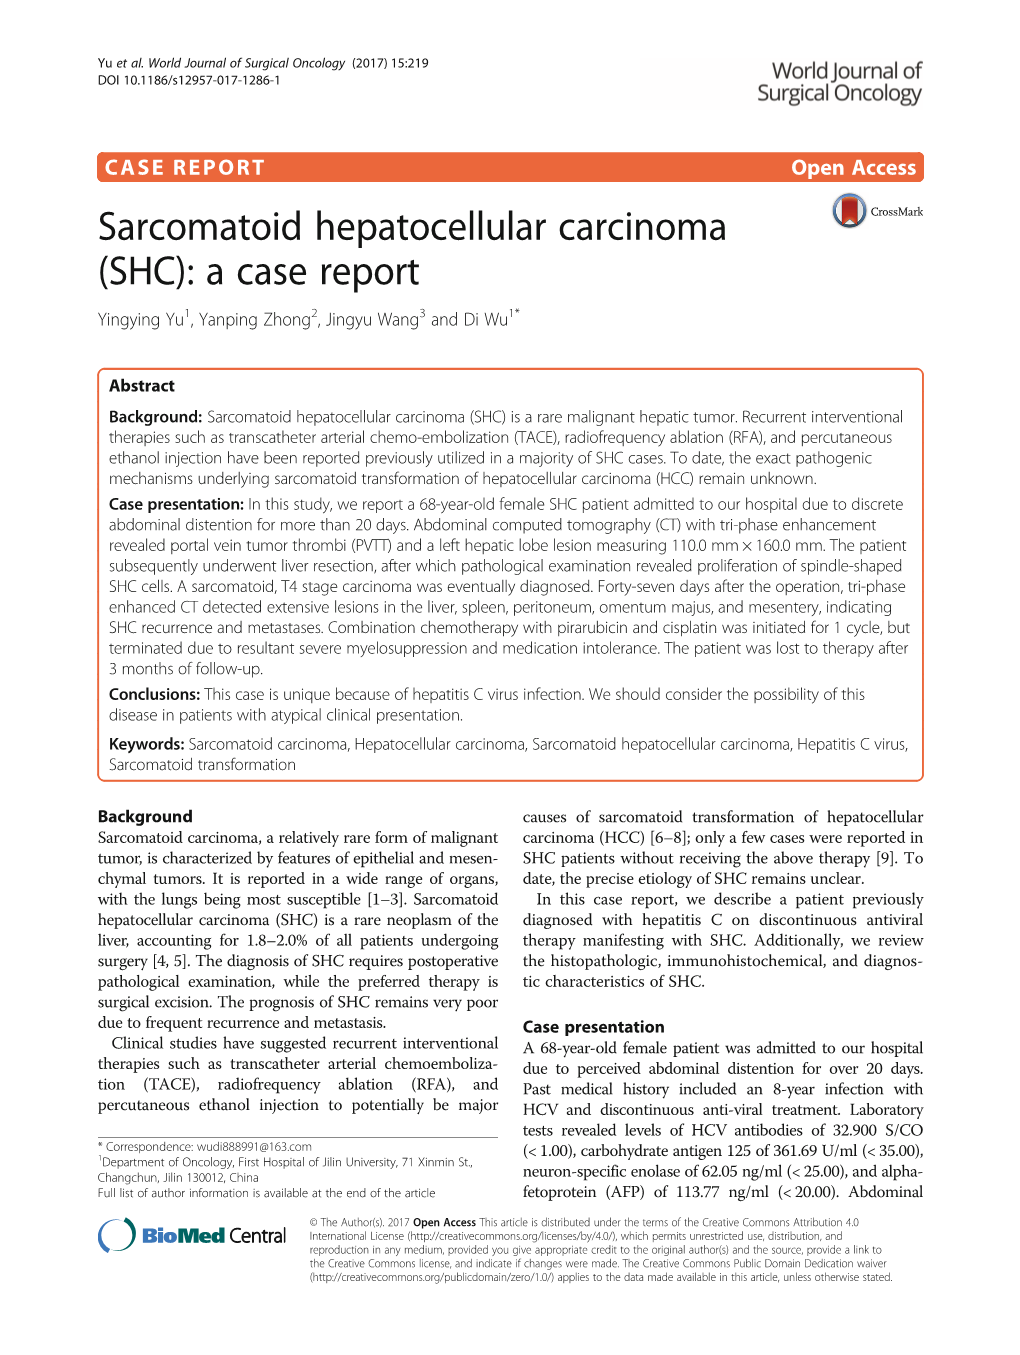 Sarcomatoid Hepatocellular Carcinoma (SHC): a Case Report Yingying Yu1, Yanping Zhong2, Jingyu Wang3 and Di Wu1*